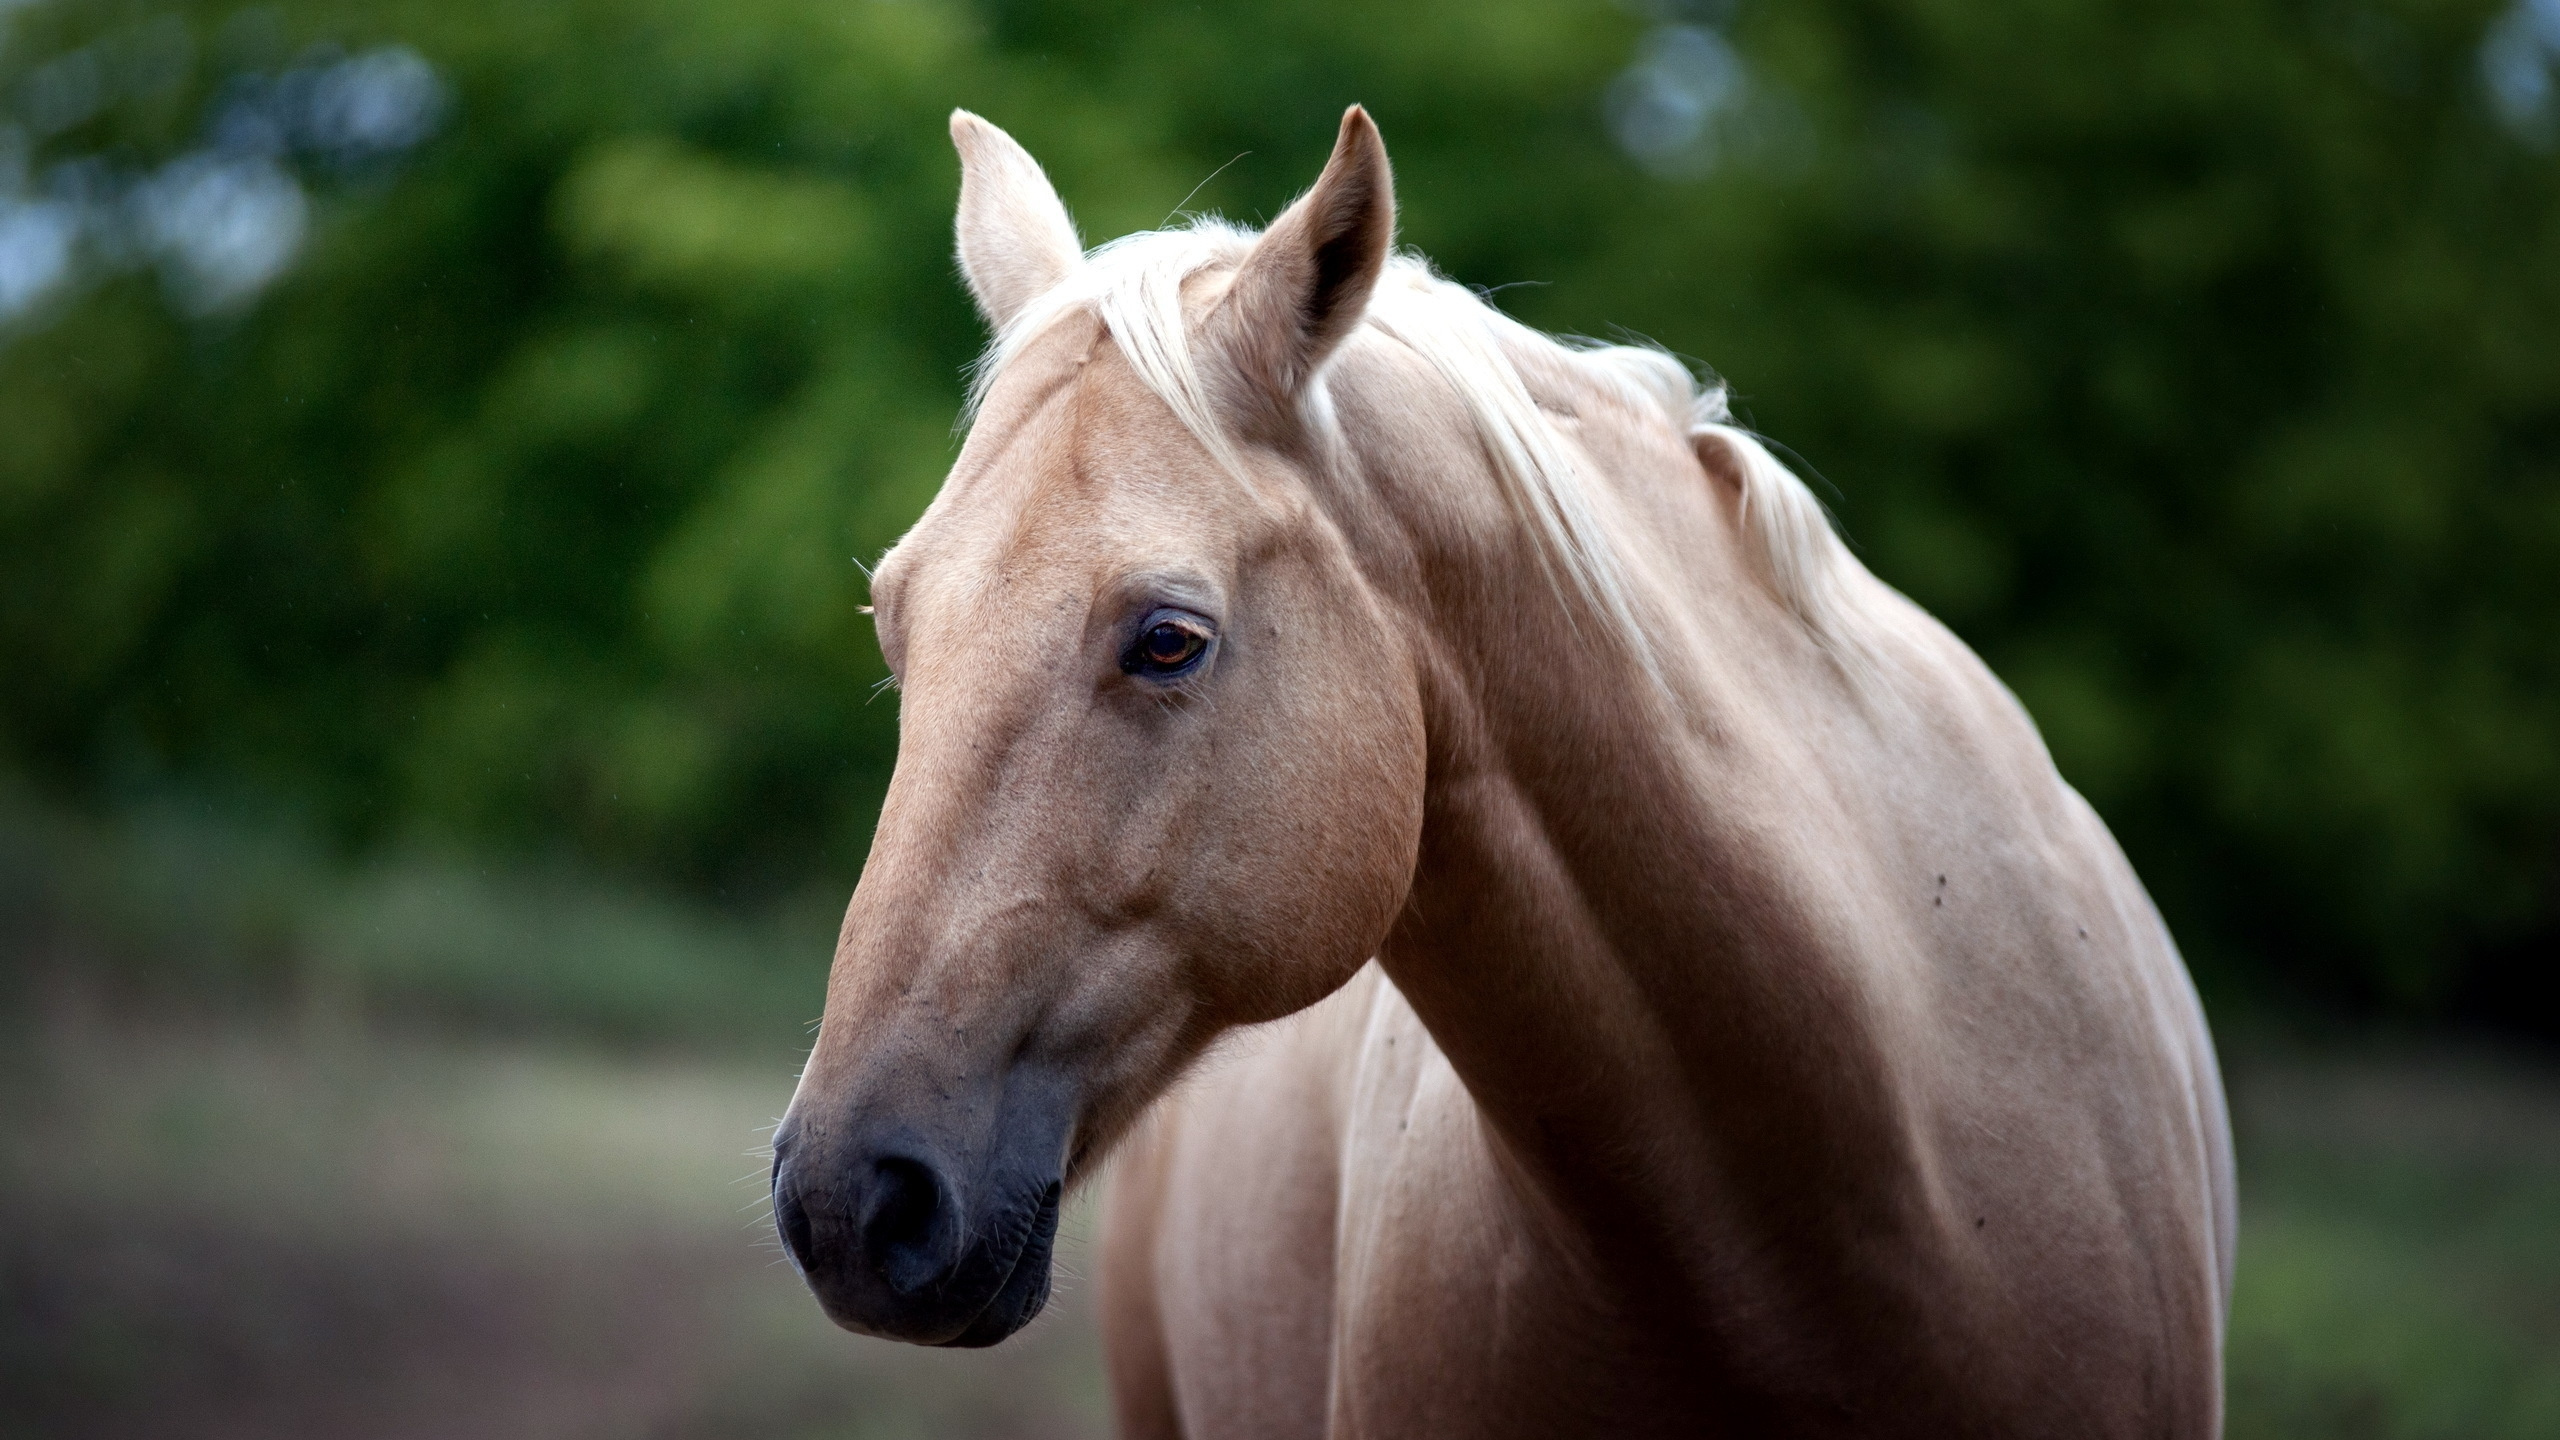 Brown Horse in Tilt Shift Lens. Wallpaper in 2560x1440 Resolution